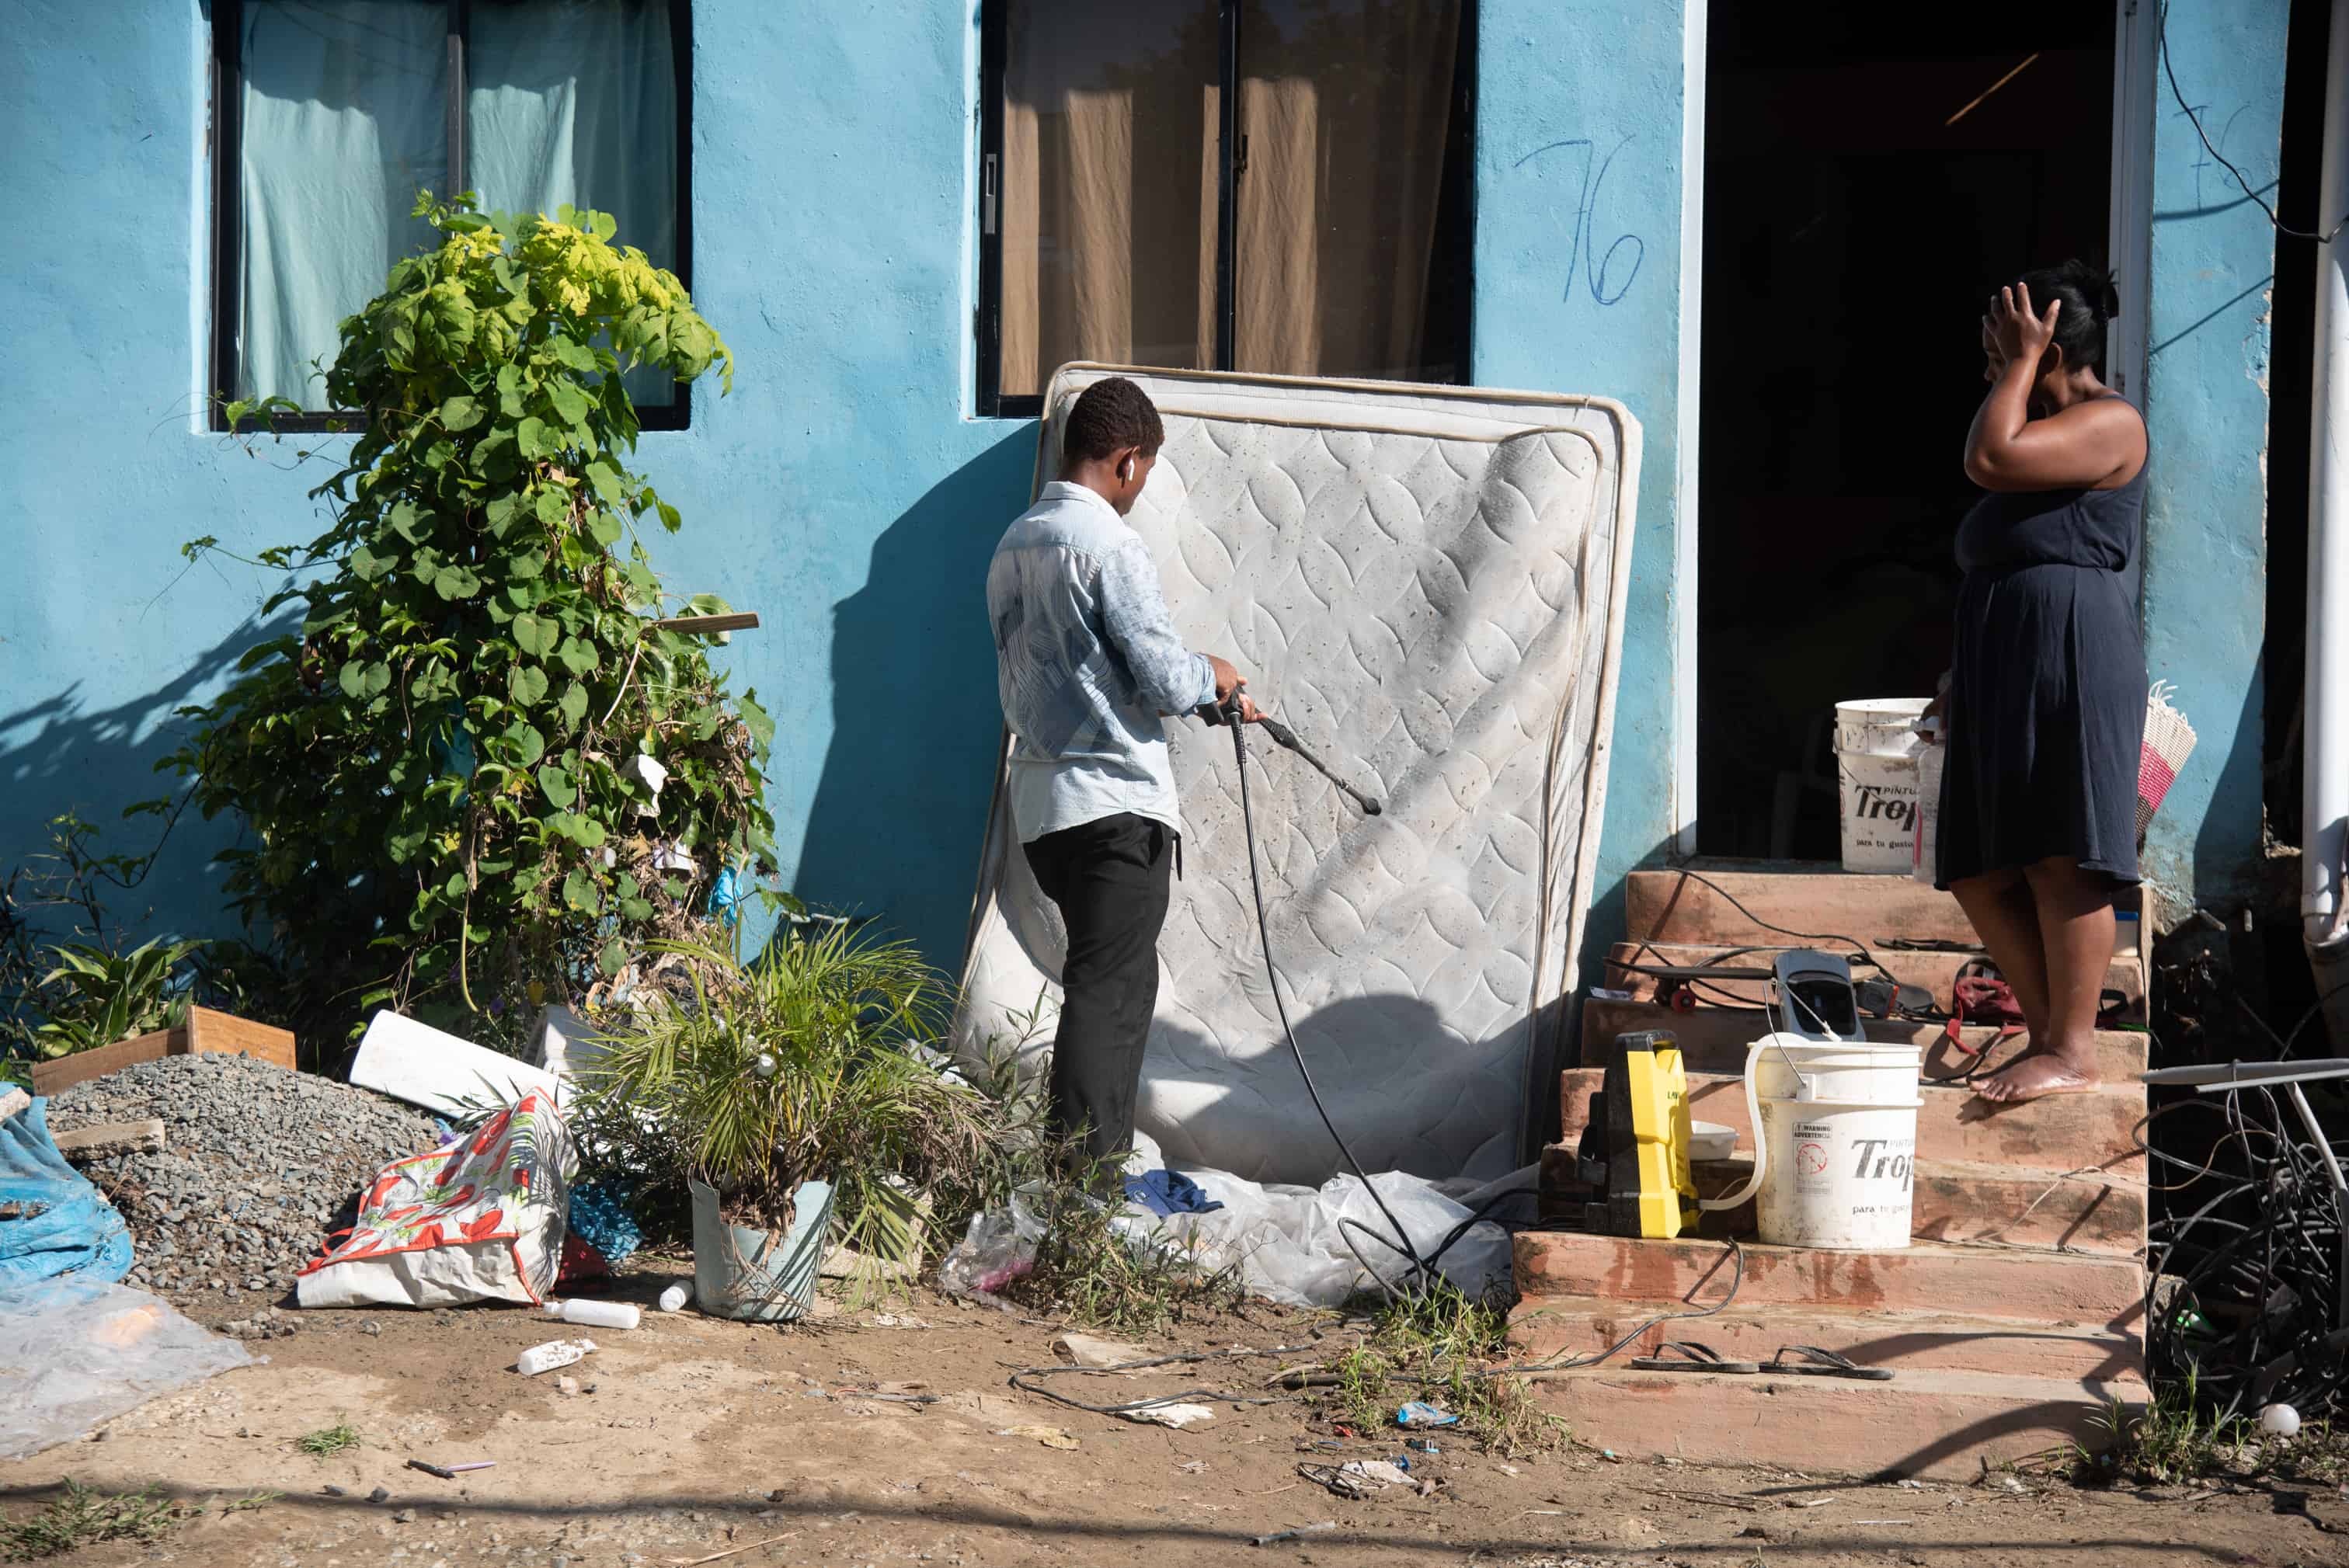 Recuperando la normalidad. Los vecinos de el barrio Las Ochocientas limpiaron sus casas y pertenencias tras las inundaciones provocadas por las fuertes lluvias del viernes 4 de noviembre.